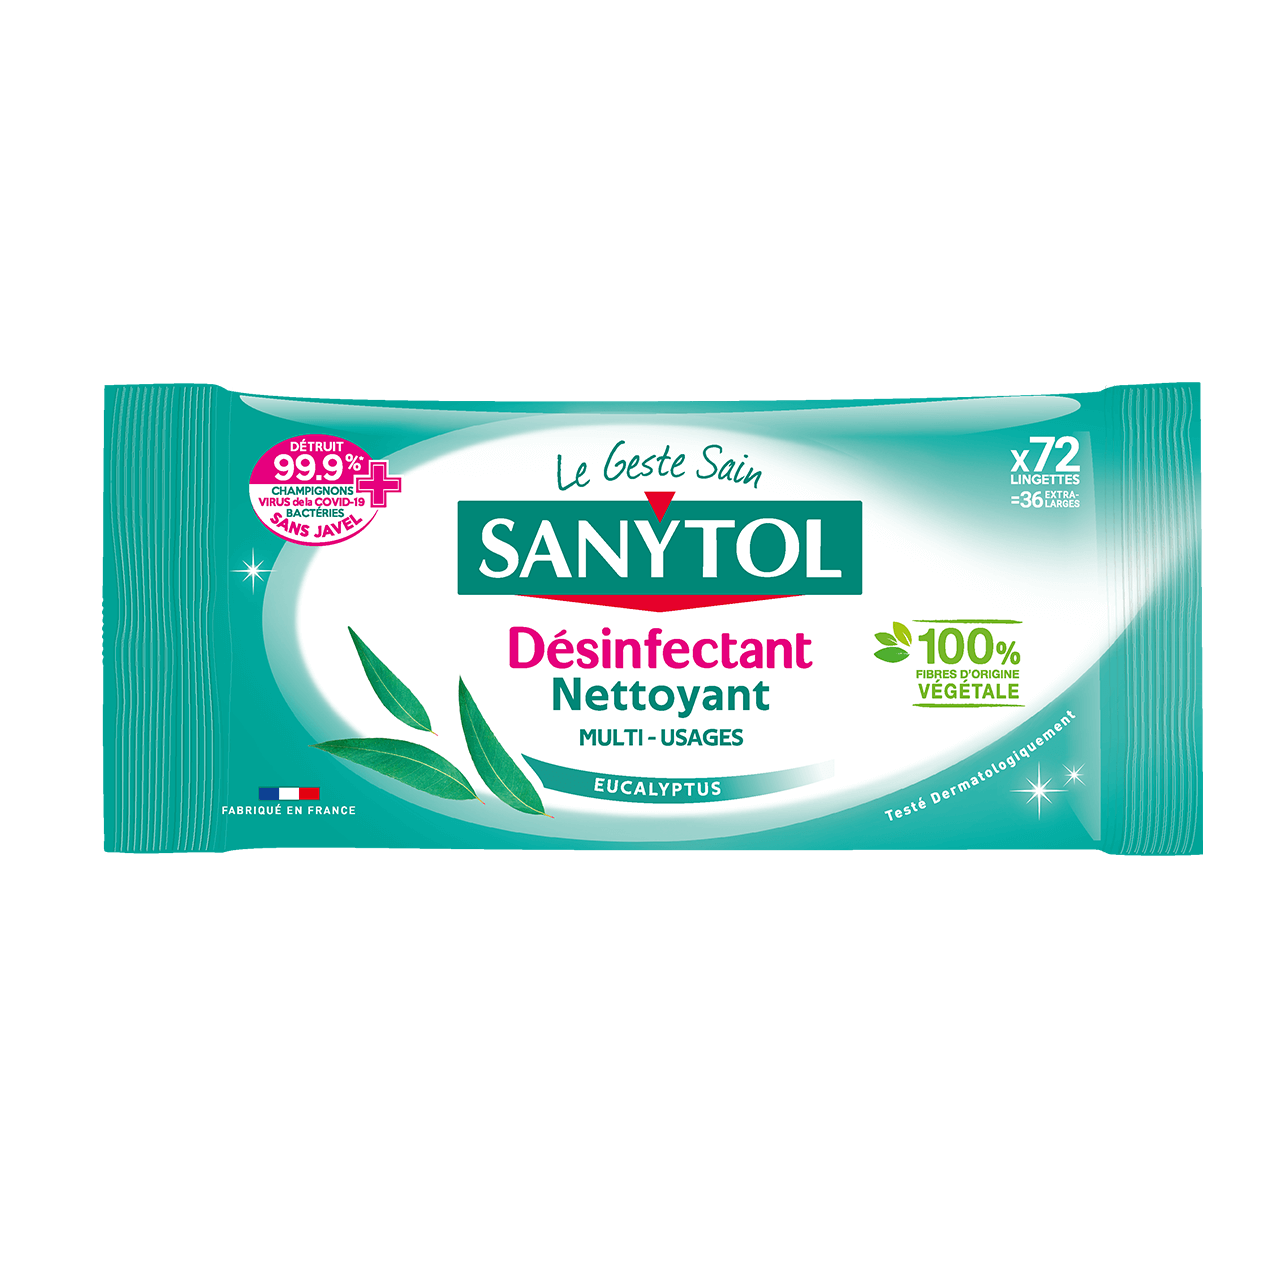 Sanytol Lingettes désinfectantes multi-usages au meilleur prix sur